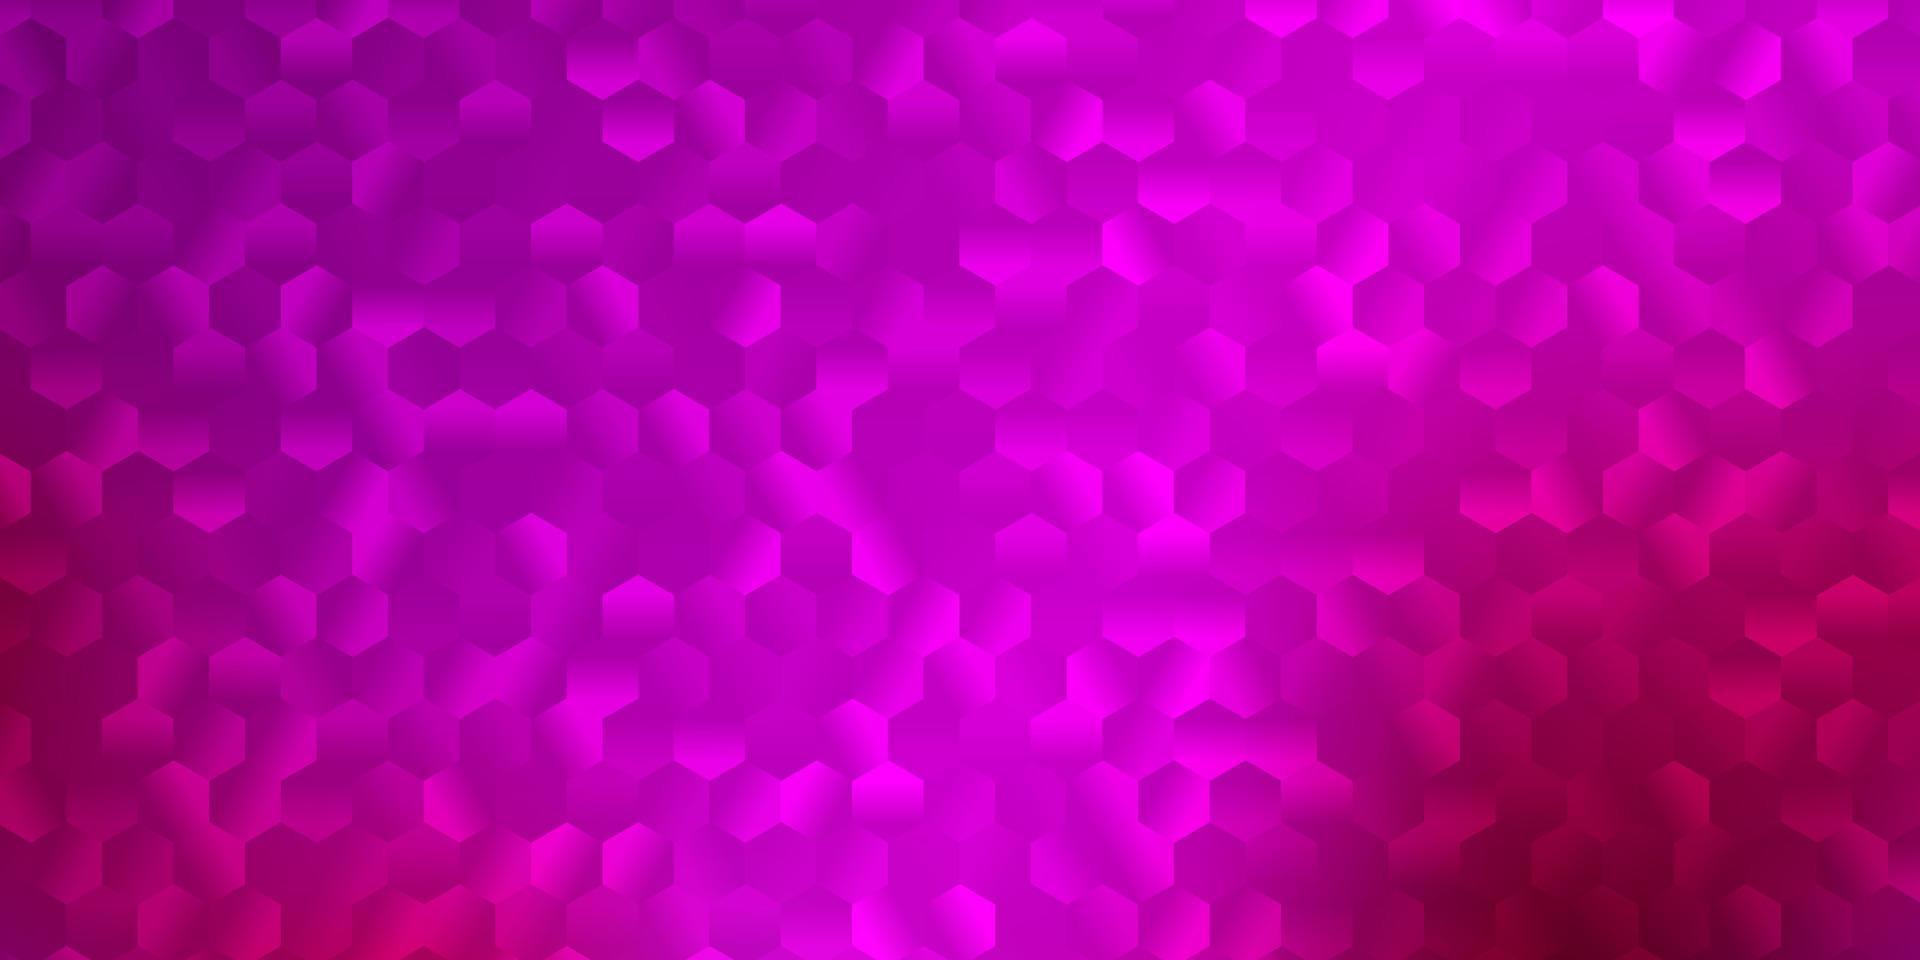 diseño de vector rosa claro con formas de hexágonos.